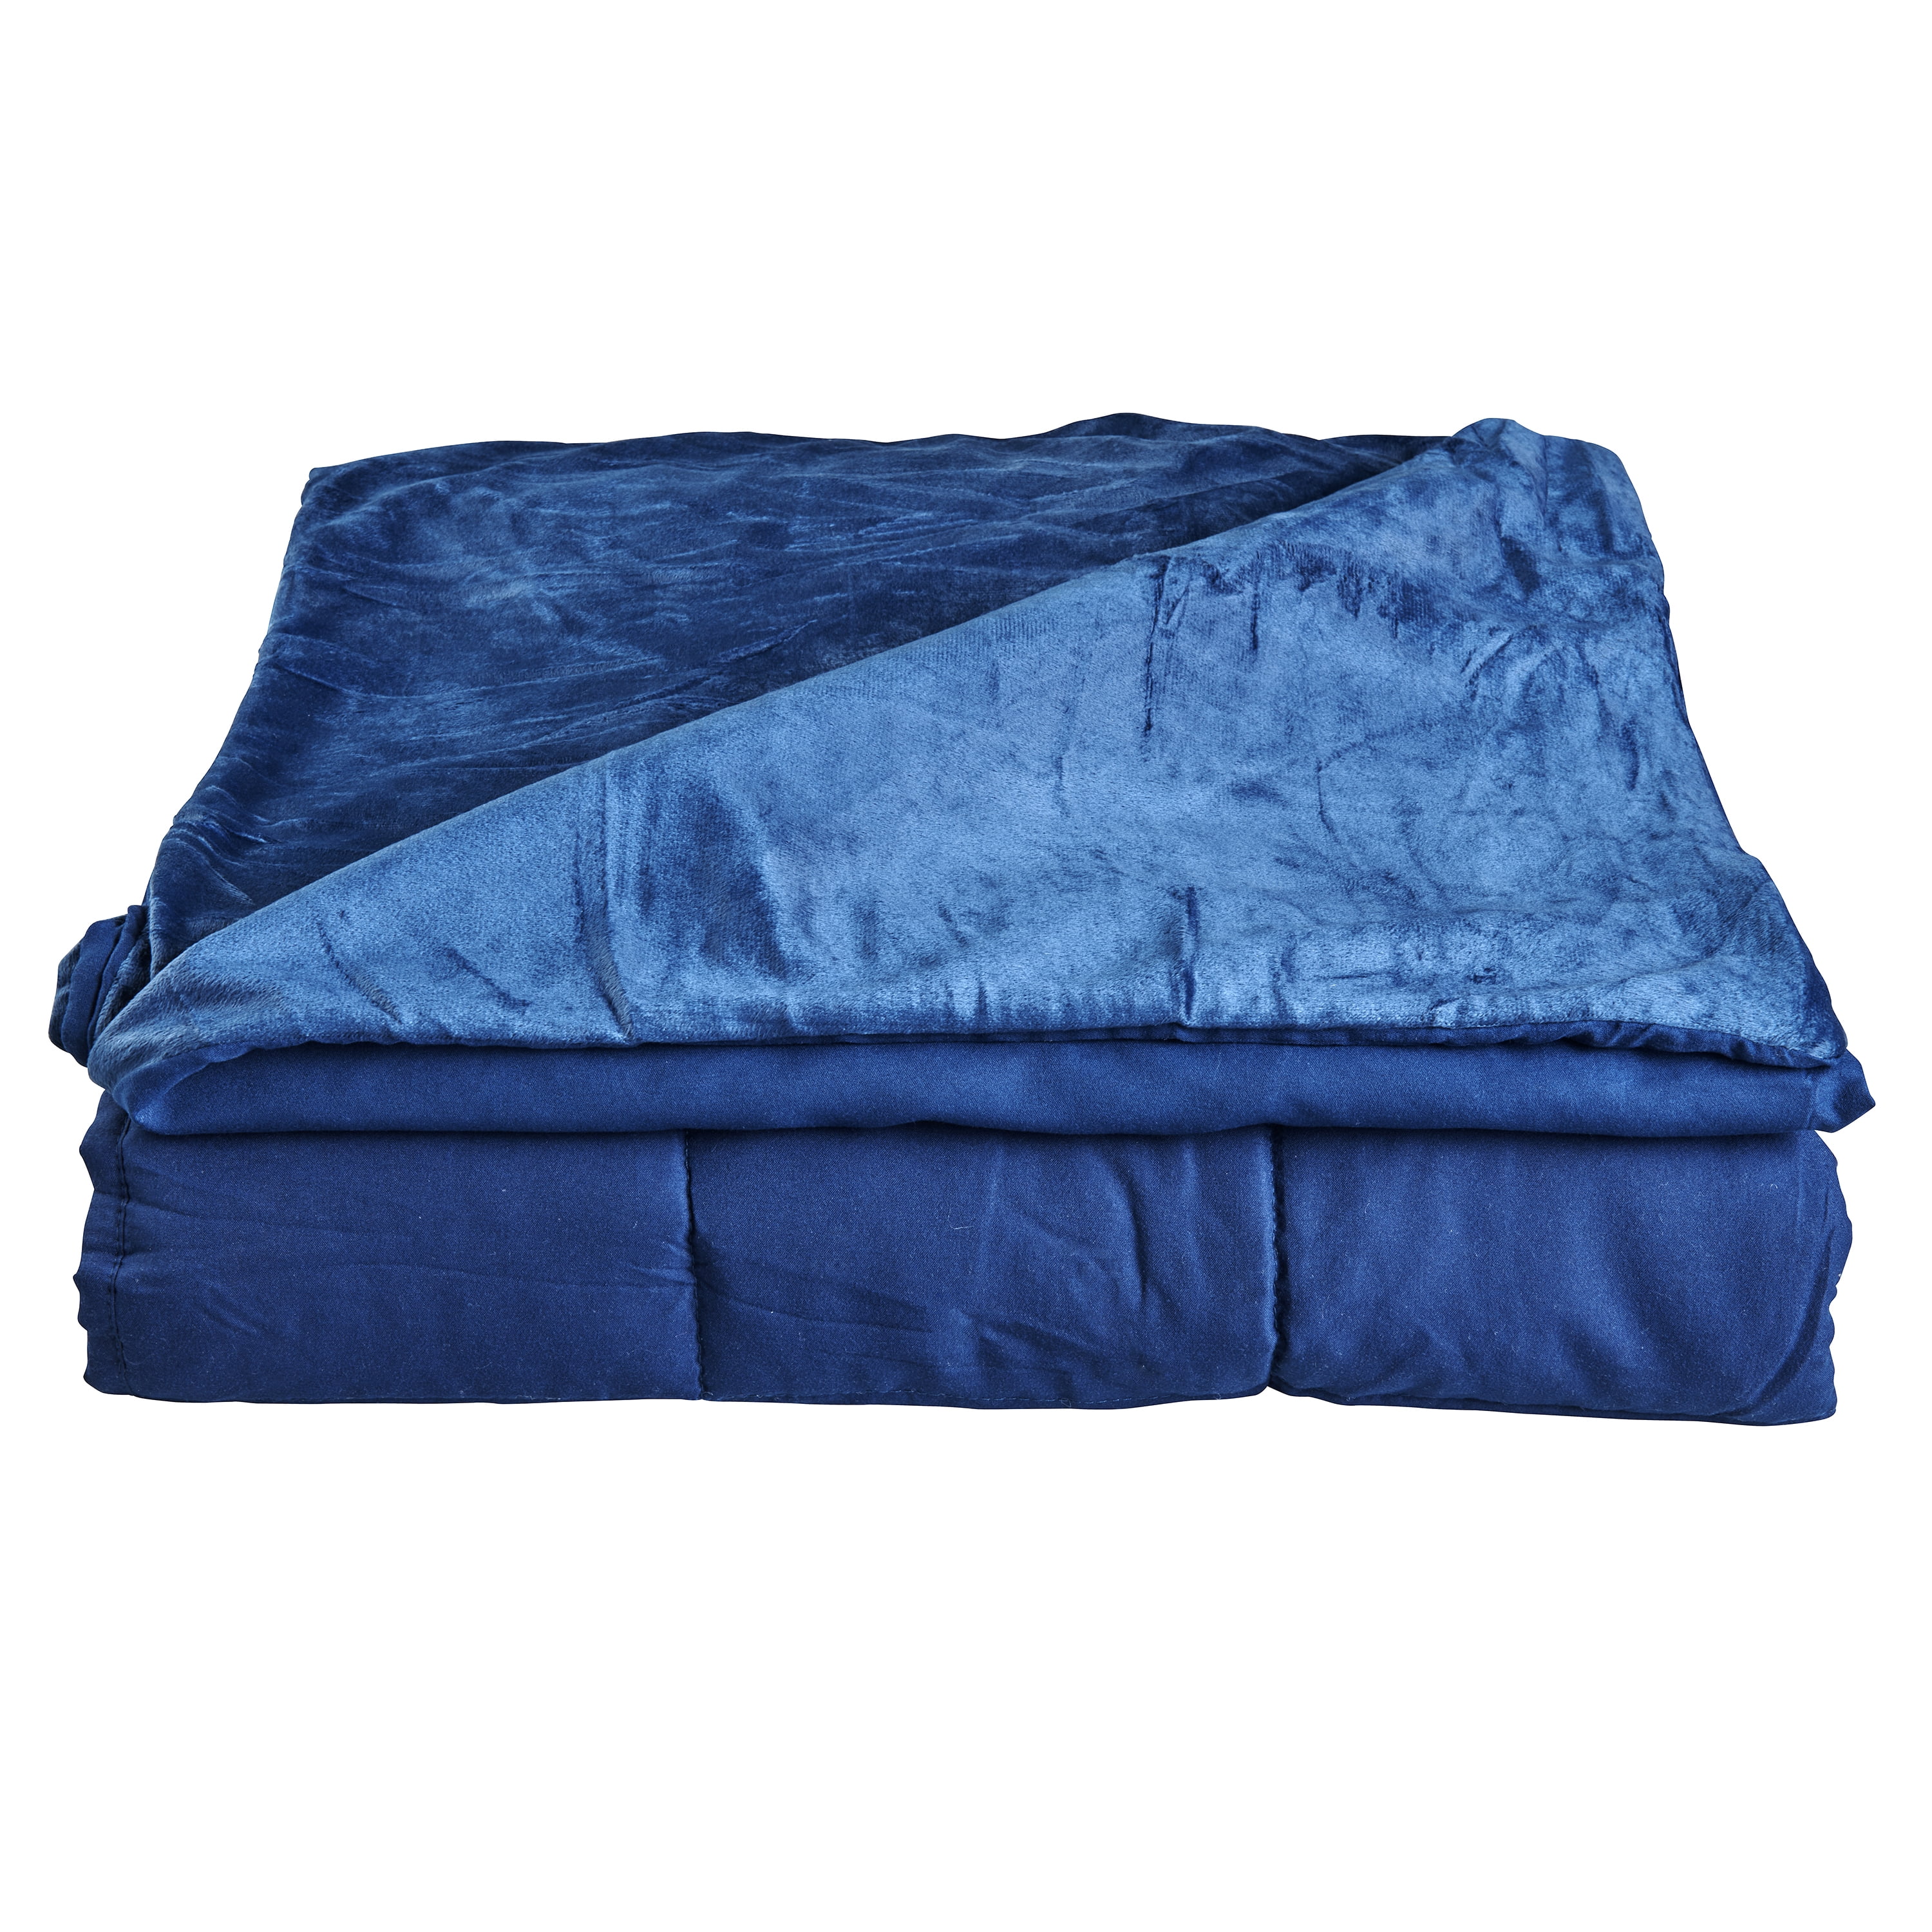 Kids Tranquility Blanket 6 lb Blue